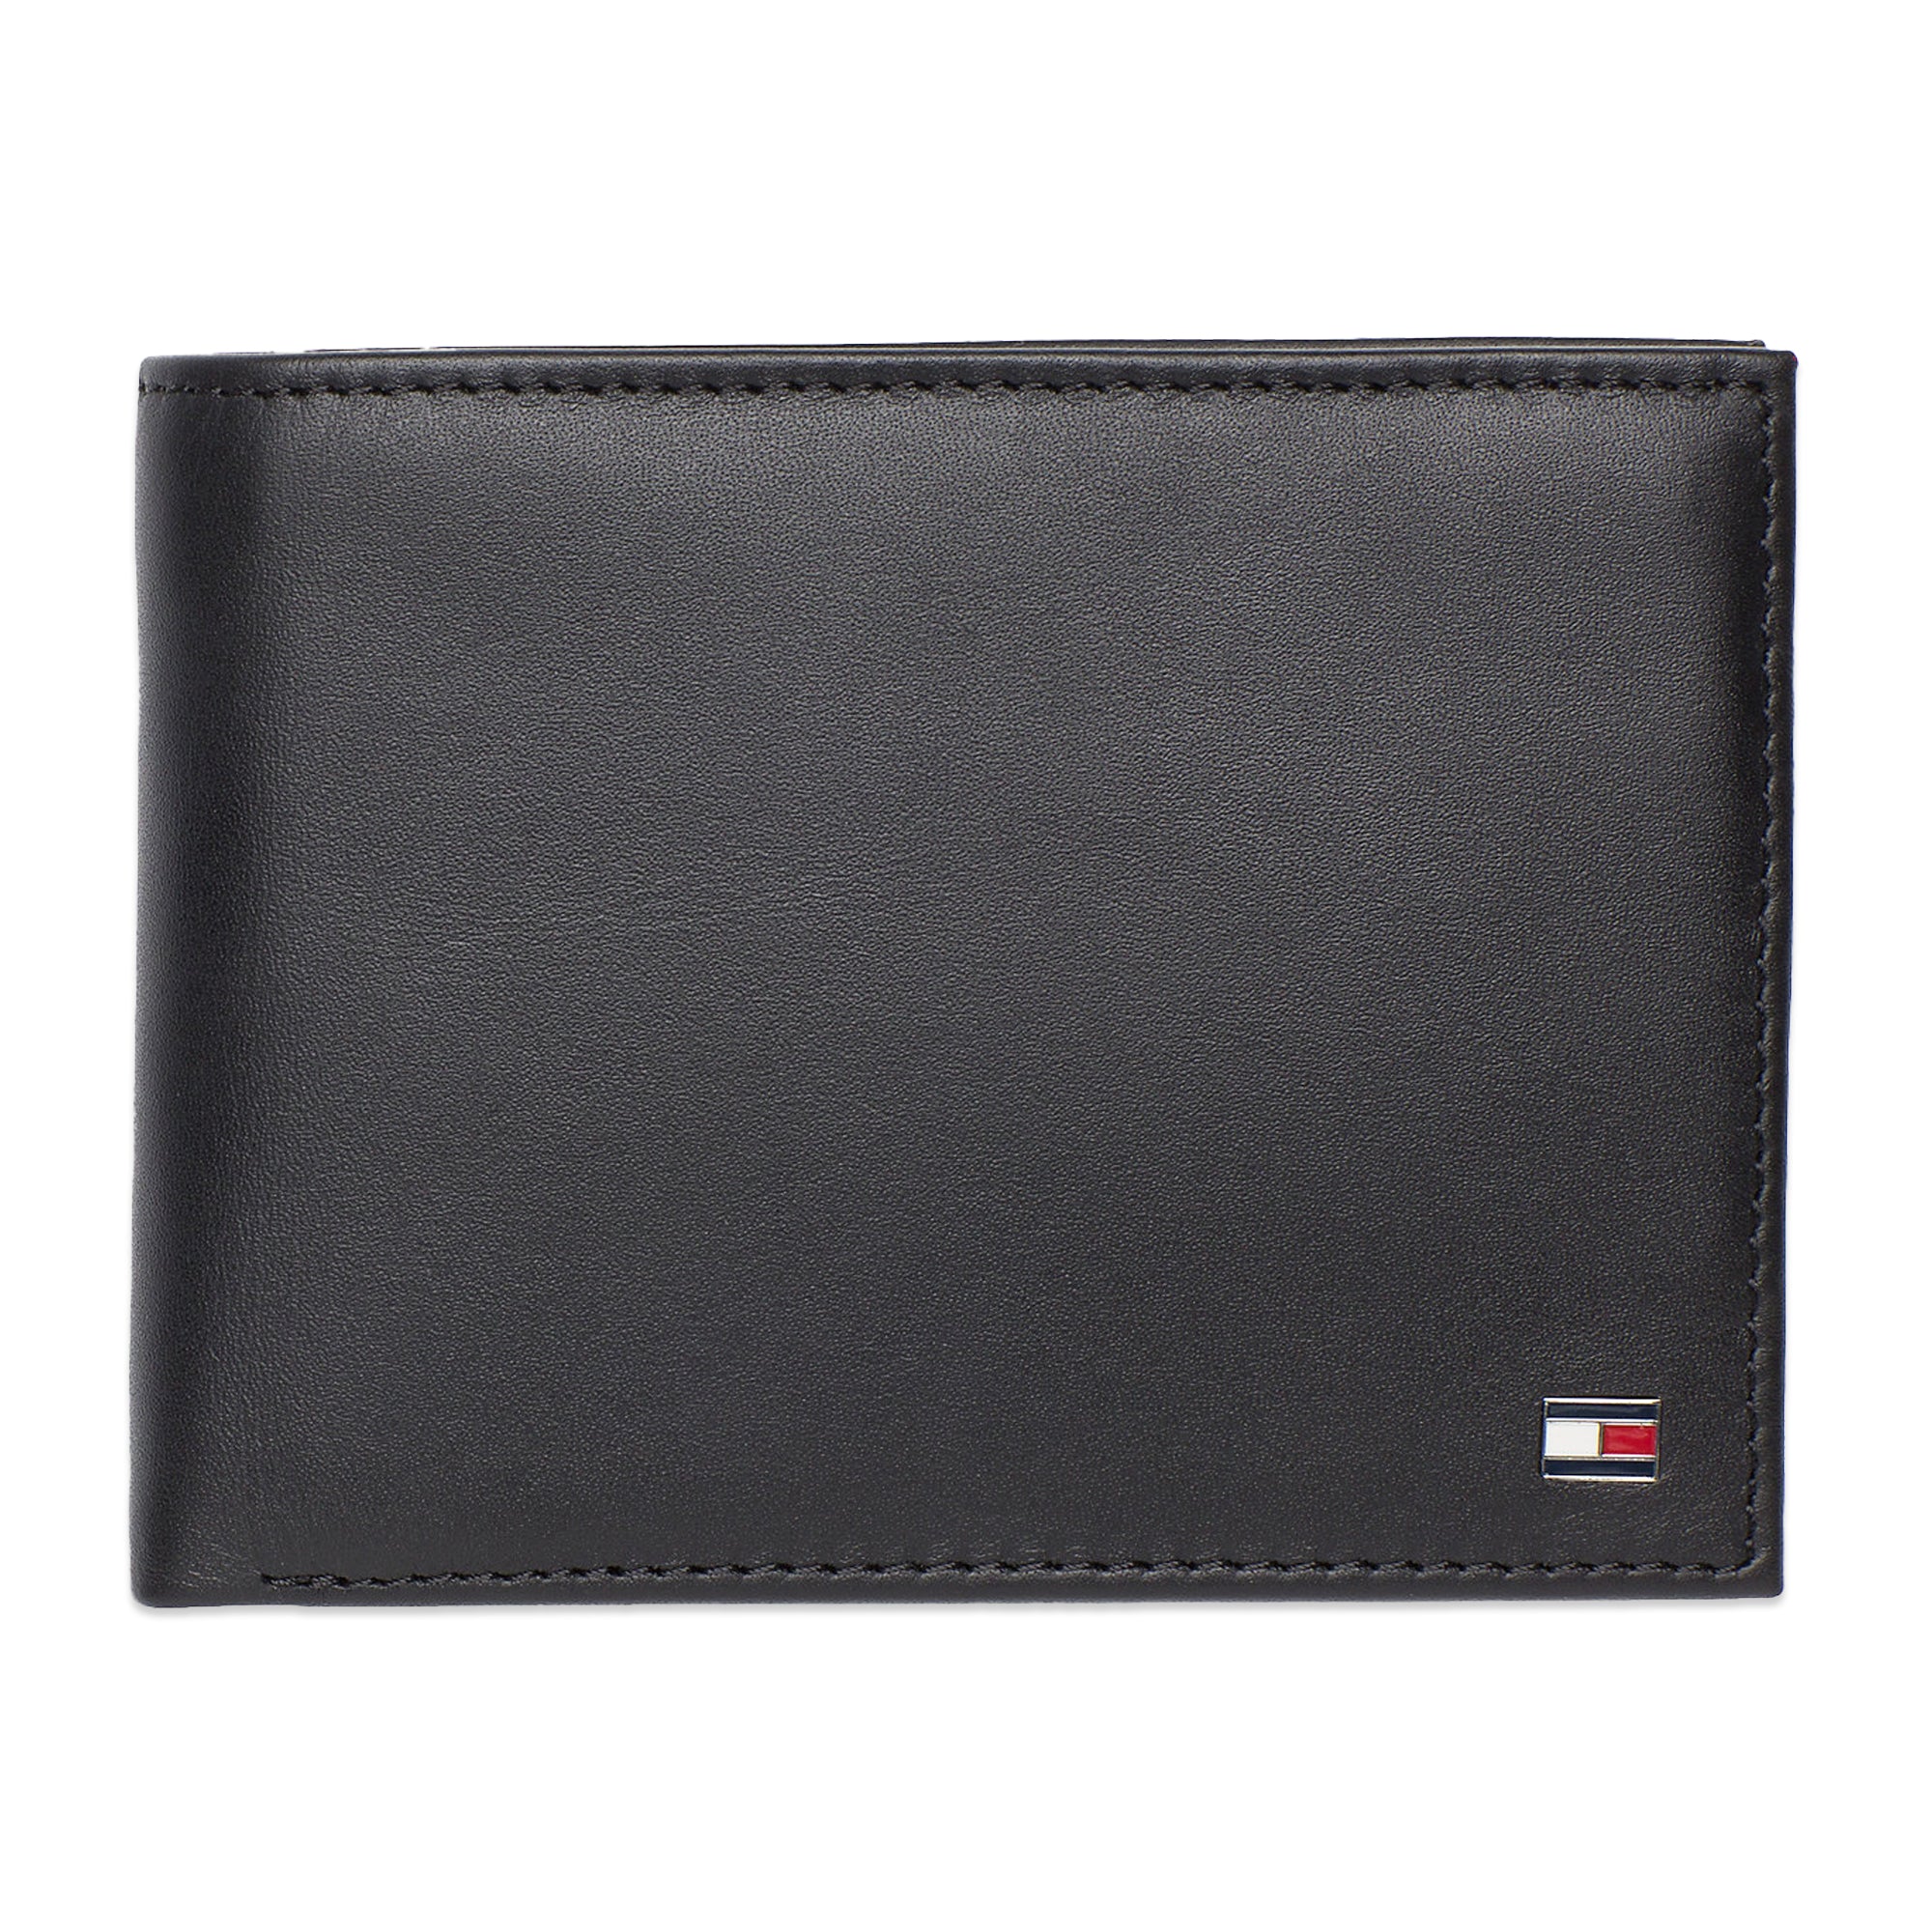 Tommy Hilfiger Eton Card and Coin Pocket Wallet - Black